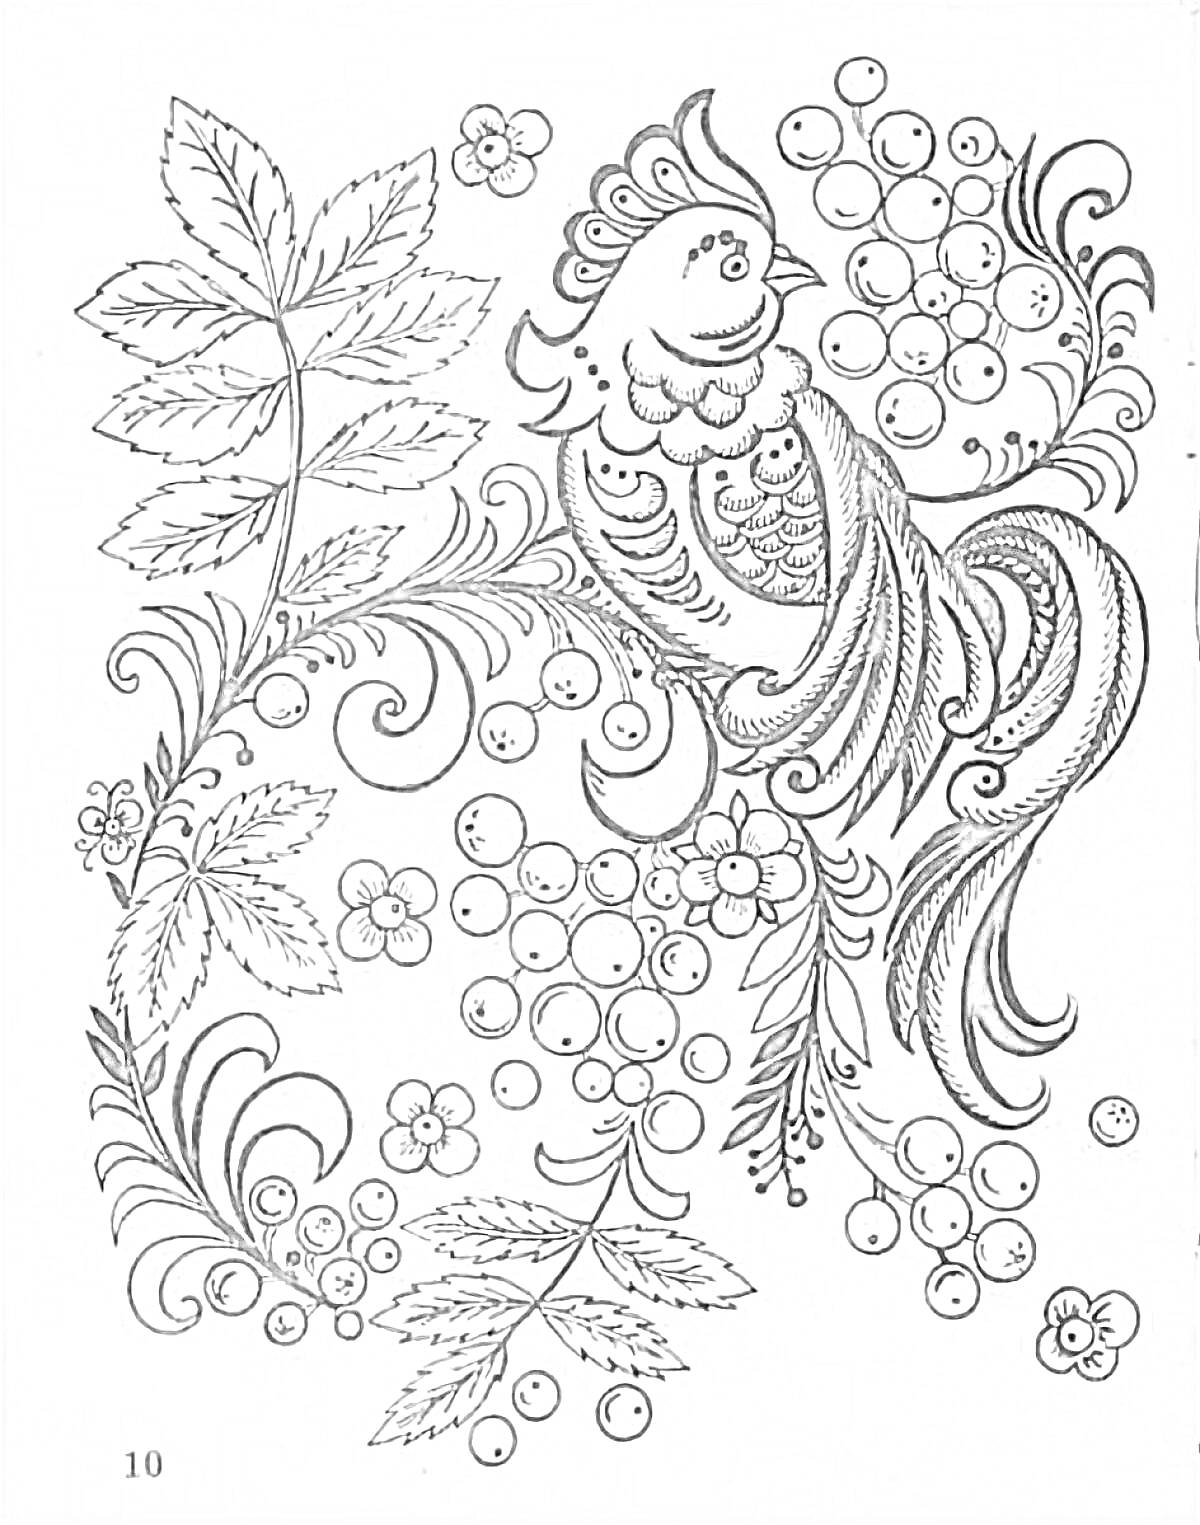 Птица на ветке с ягодами и листьями в стиле хохломы